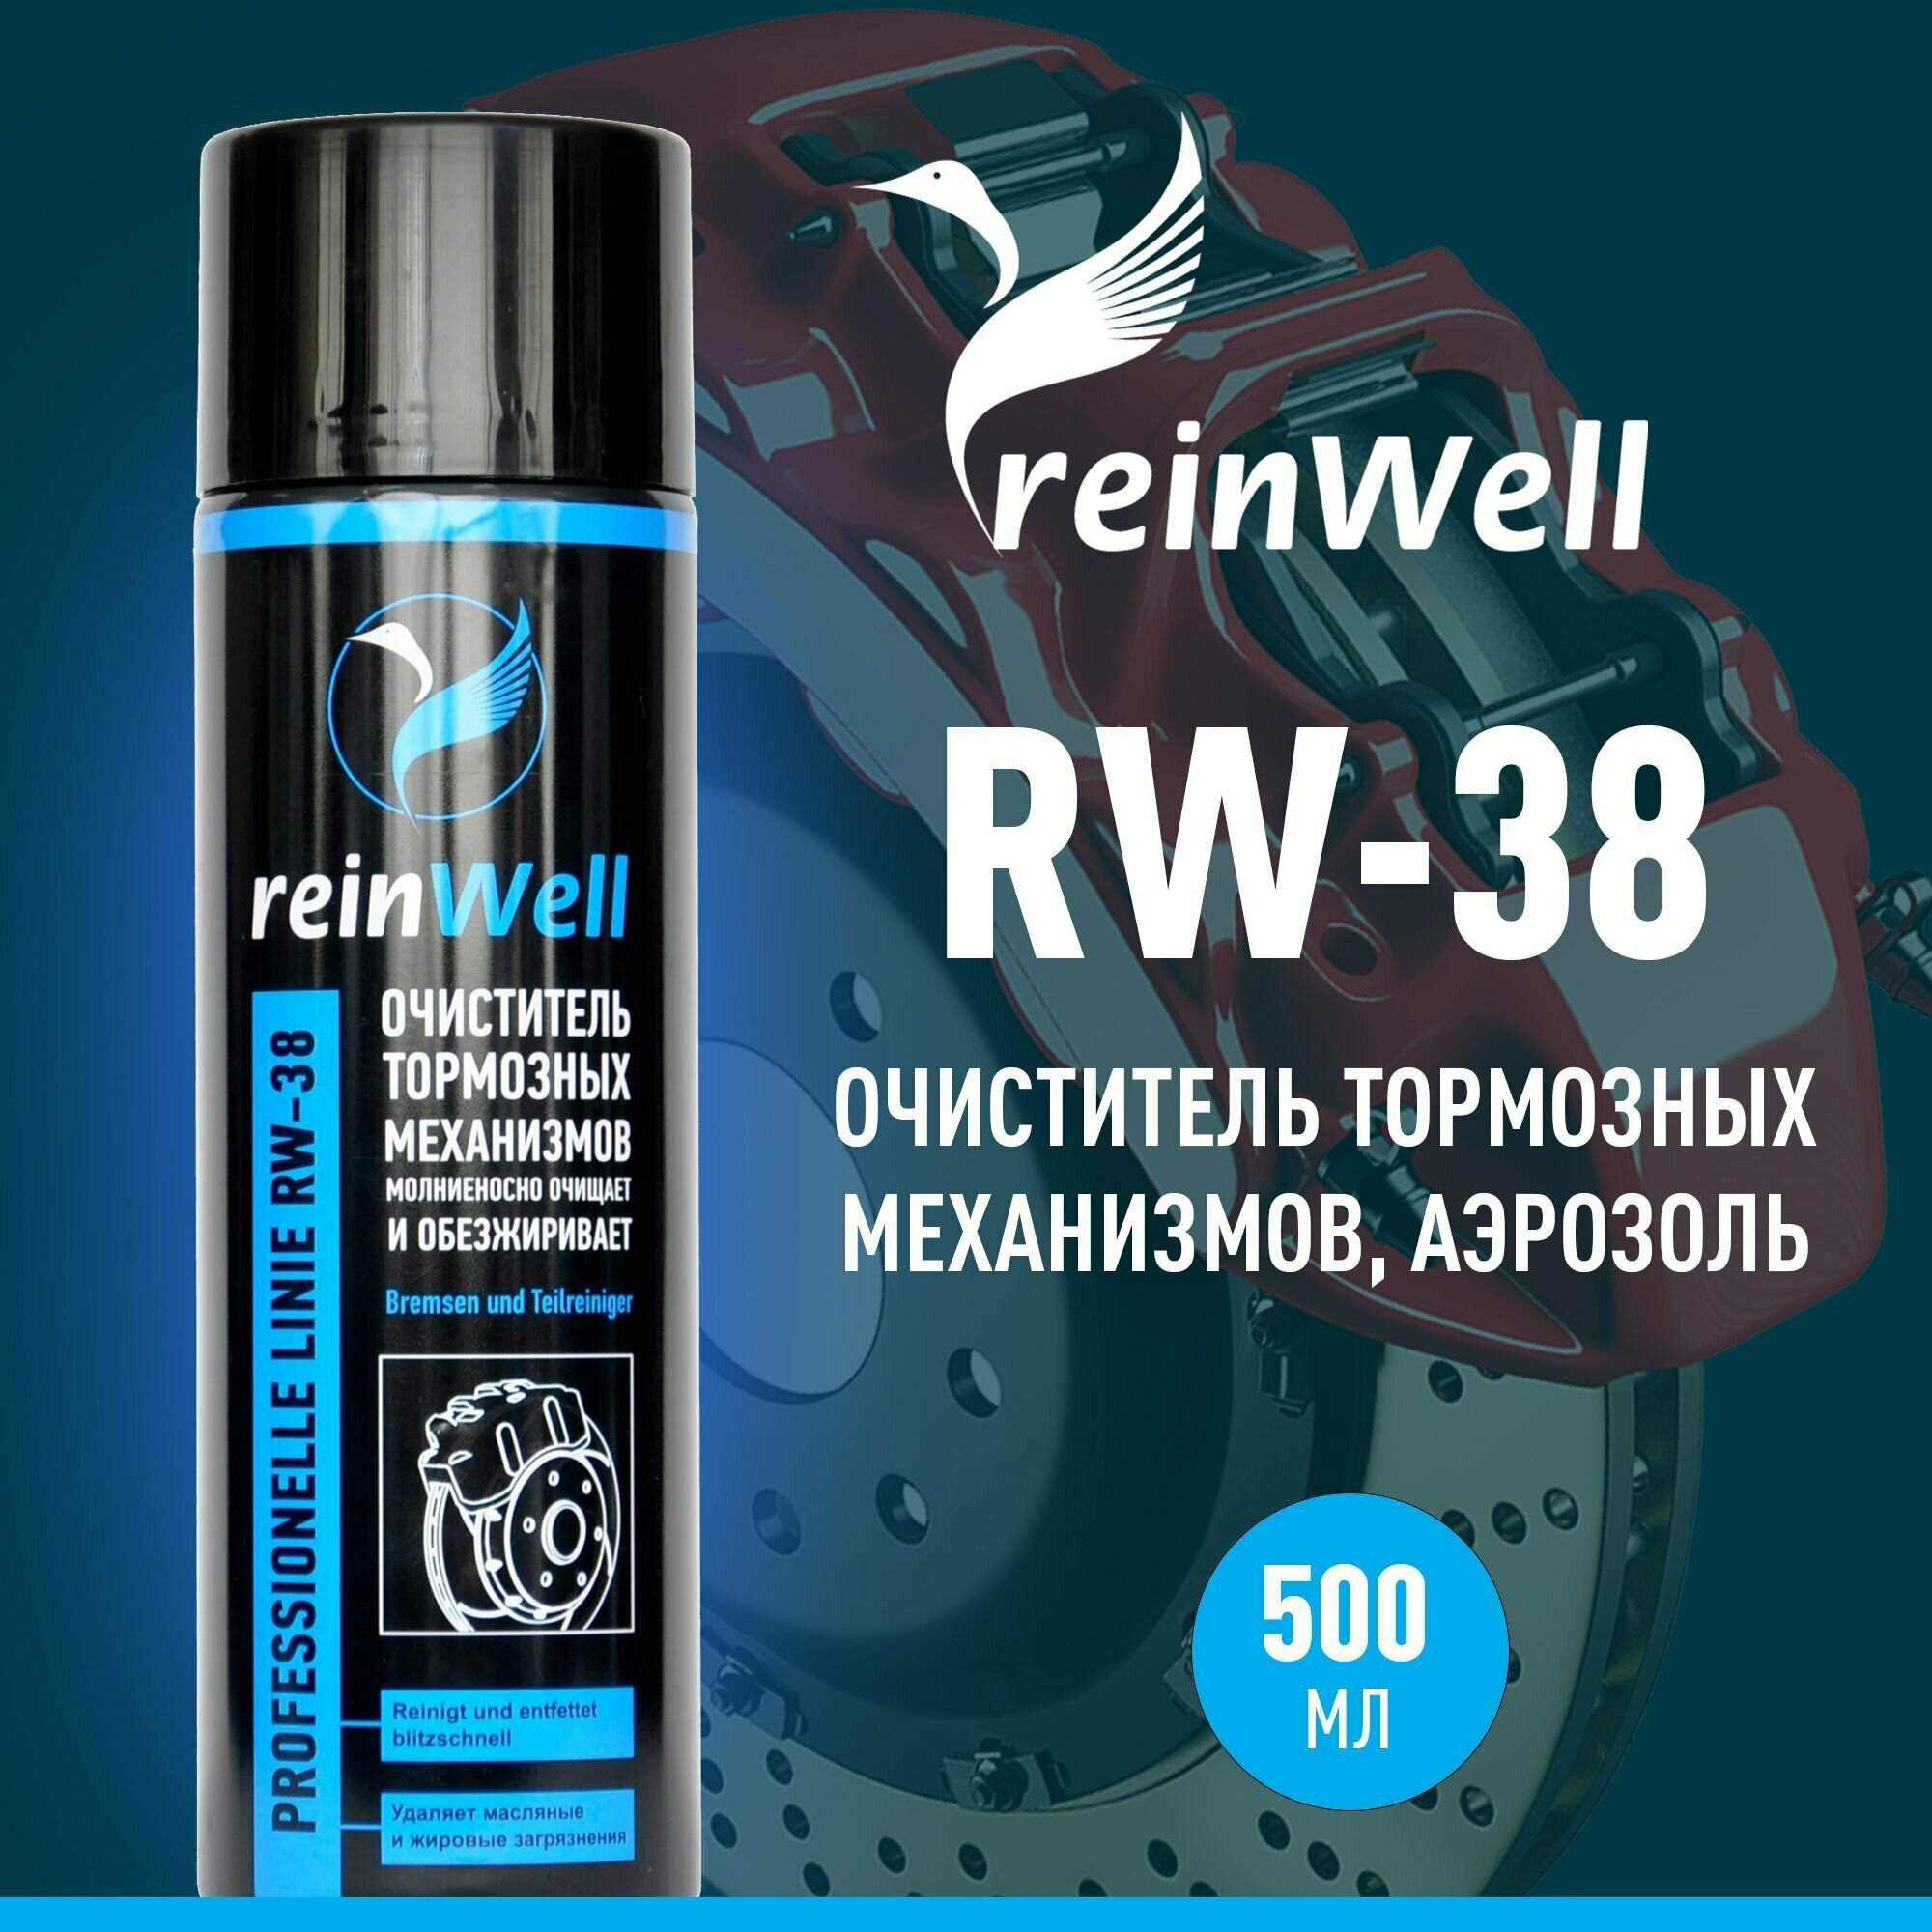 Очиститель тормозной системы reinWell RW-38